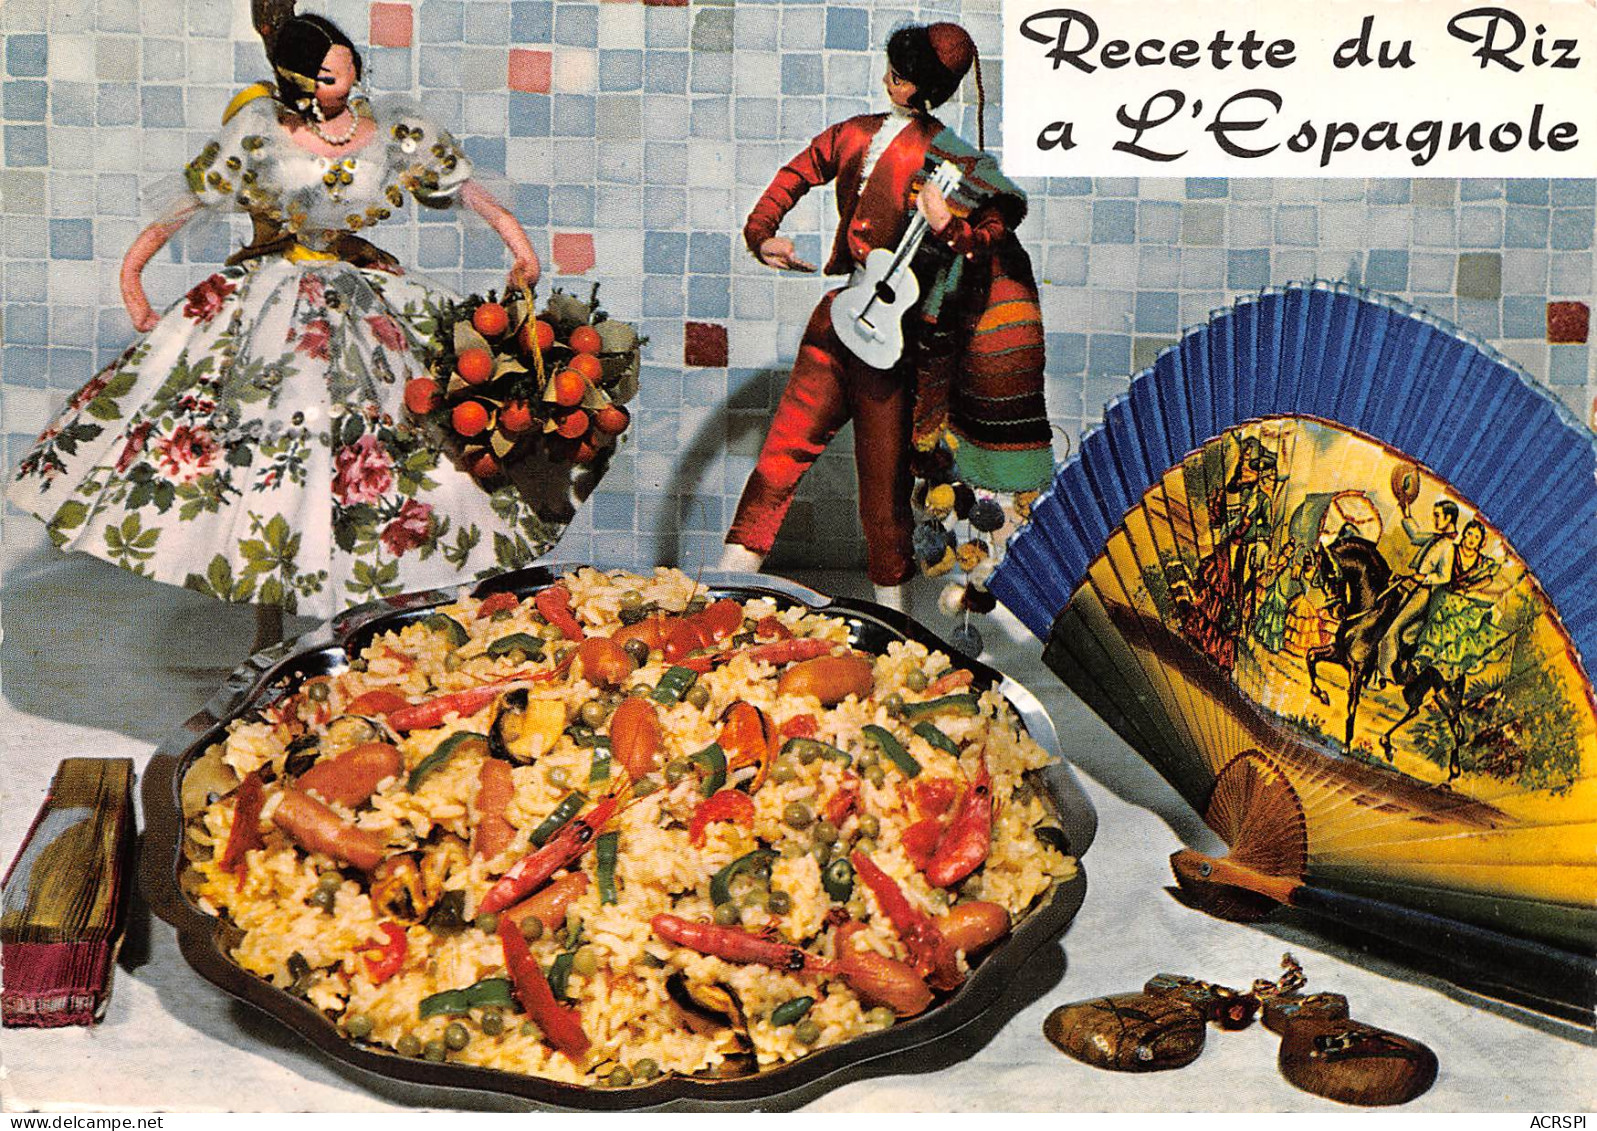 Recette  Le Riz à L'espagnole Par Emilie Bernard  N° 19 \MK3029 - Recettes (cuisine)